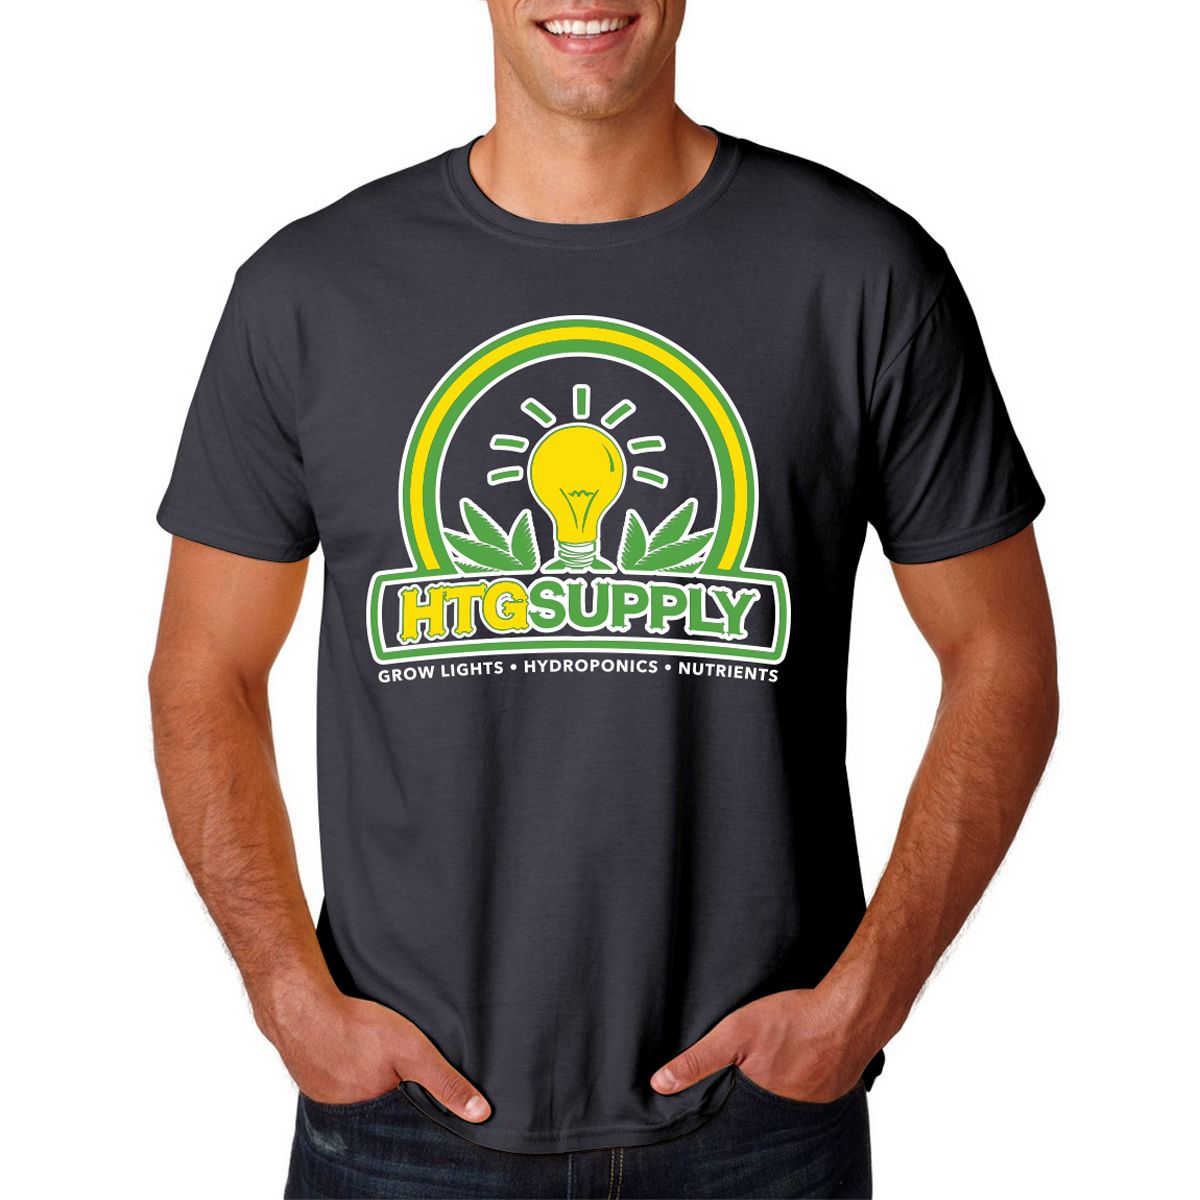 HTG Supply T Shirt